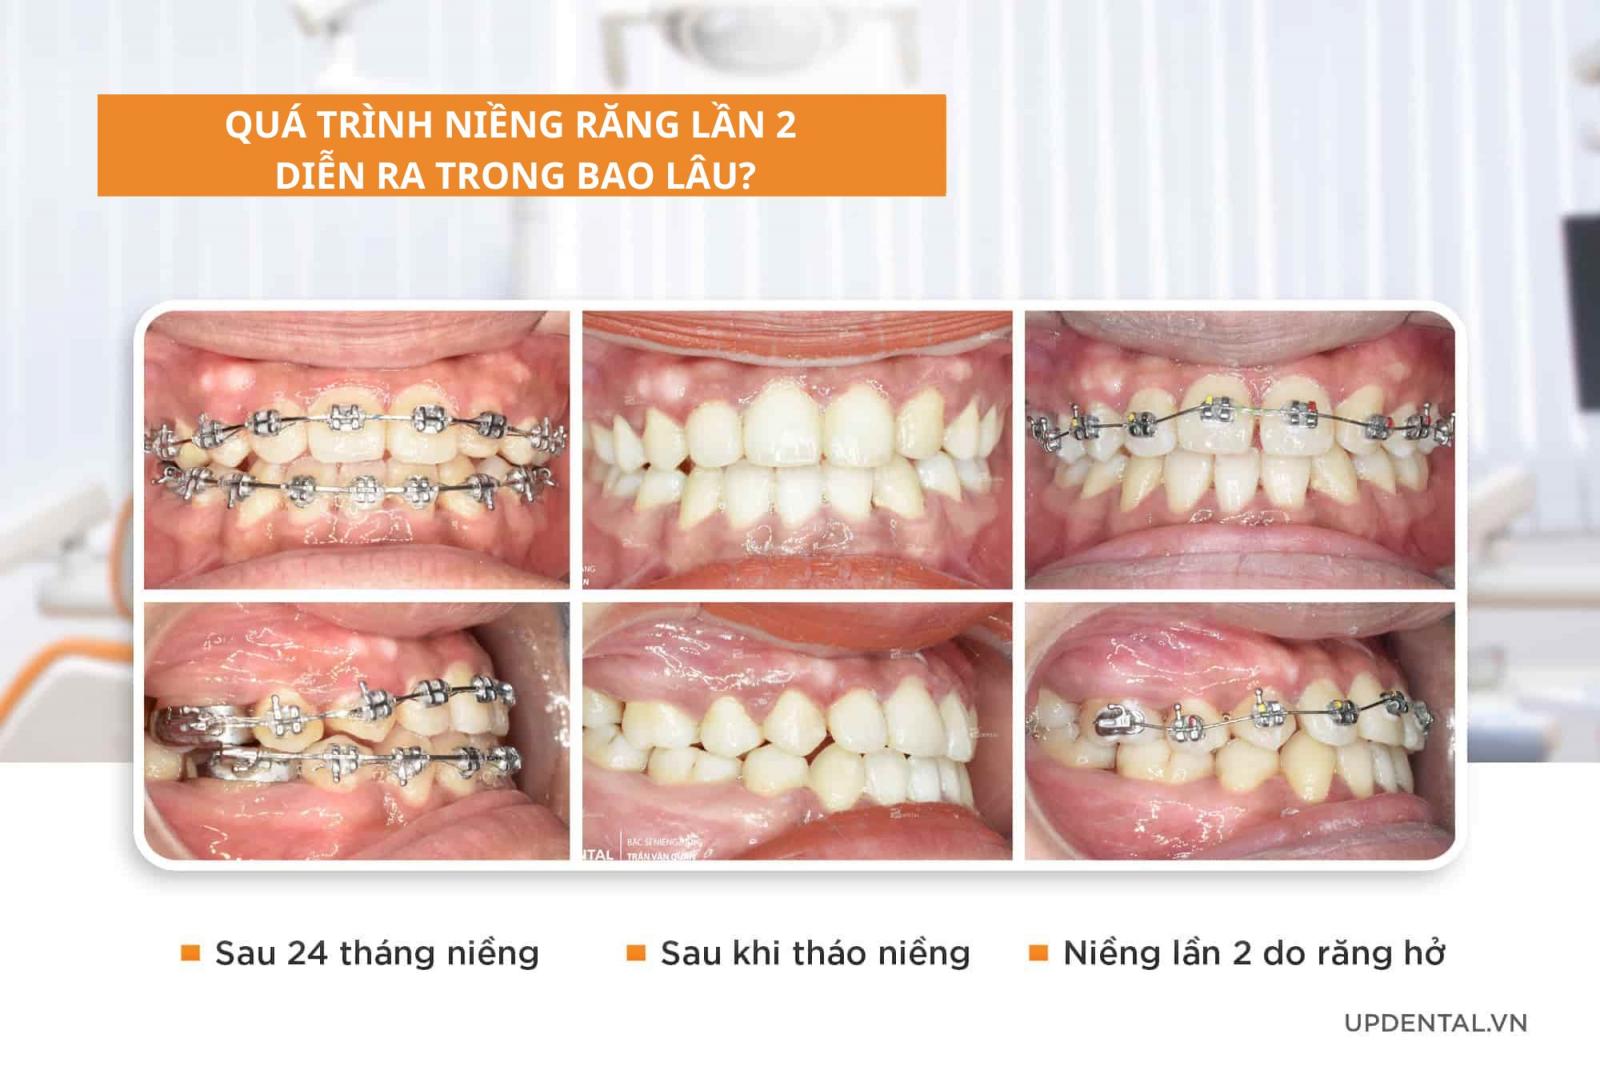 Quá trình niềng răng lần 2 diễn ra trong bao lâu